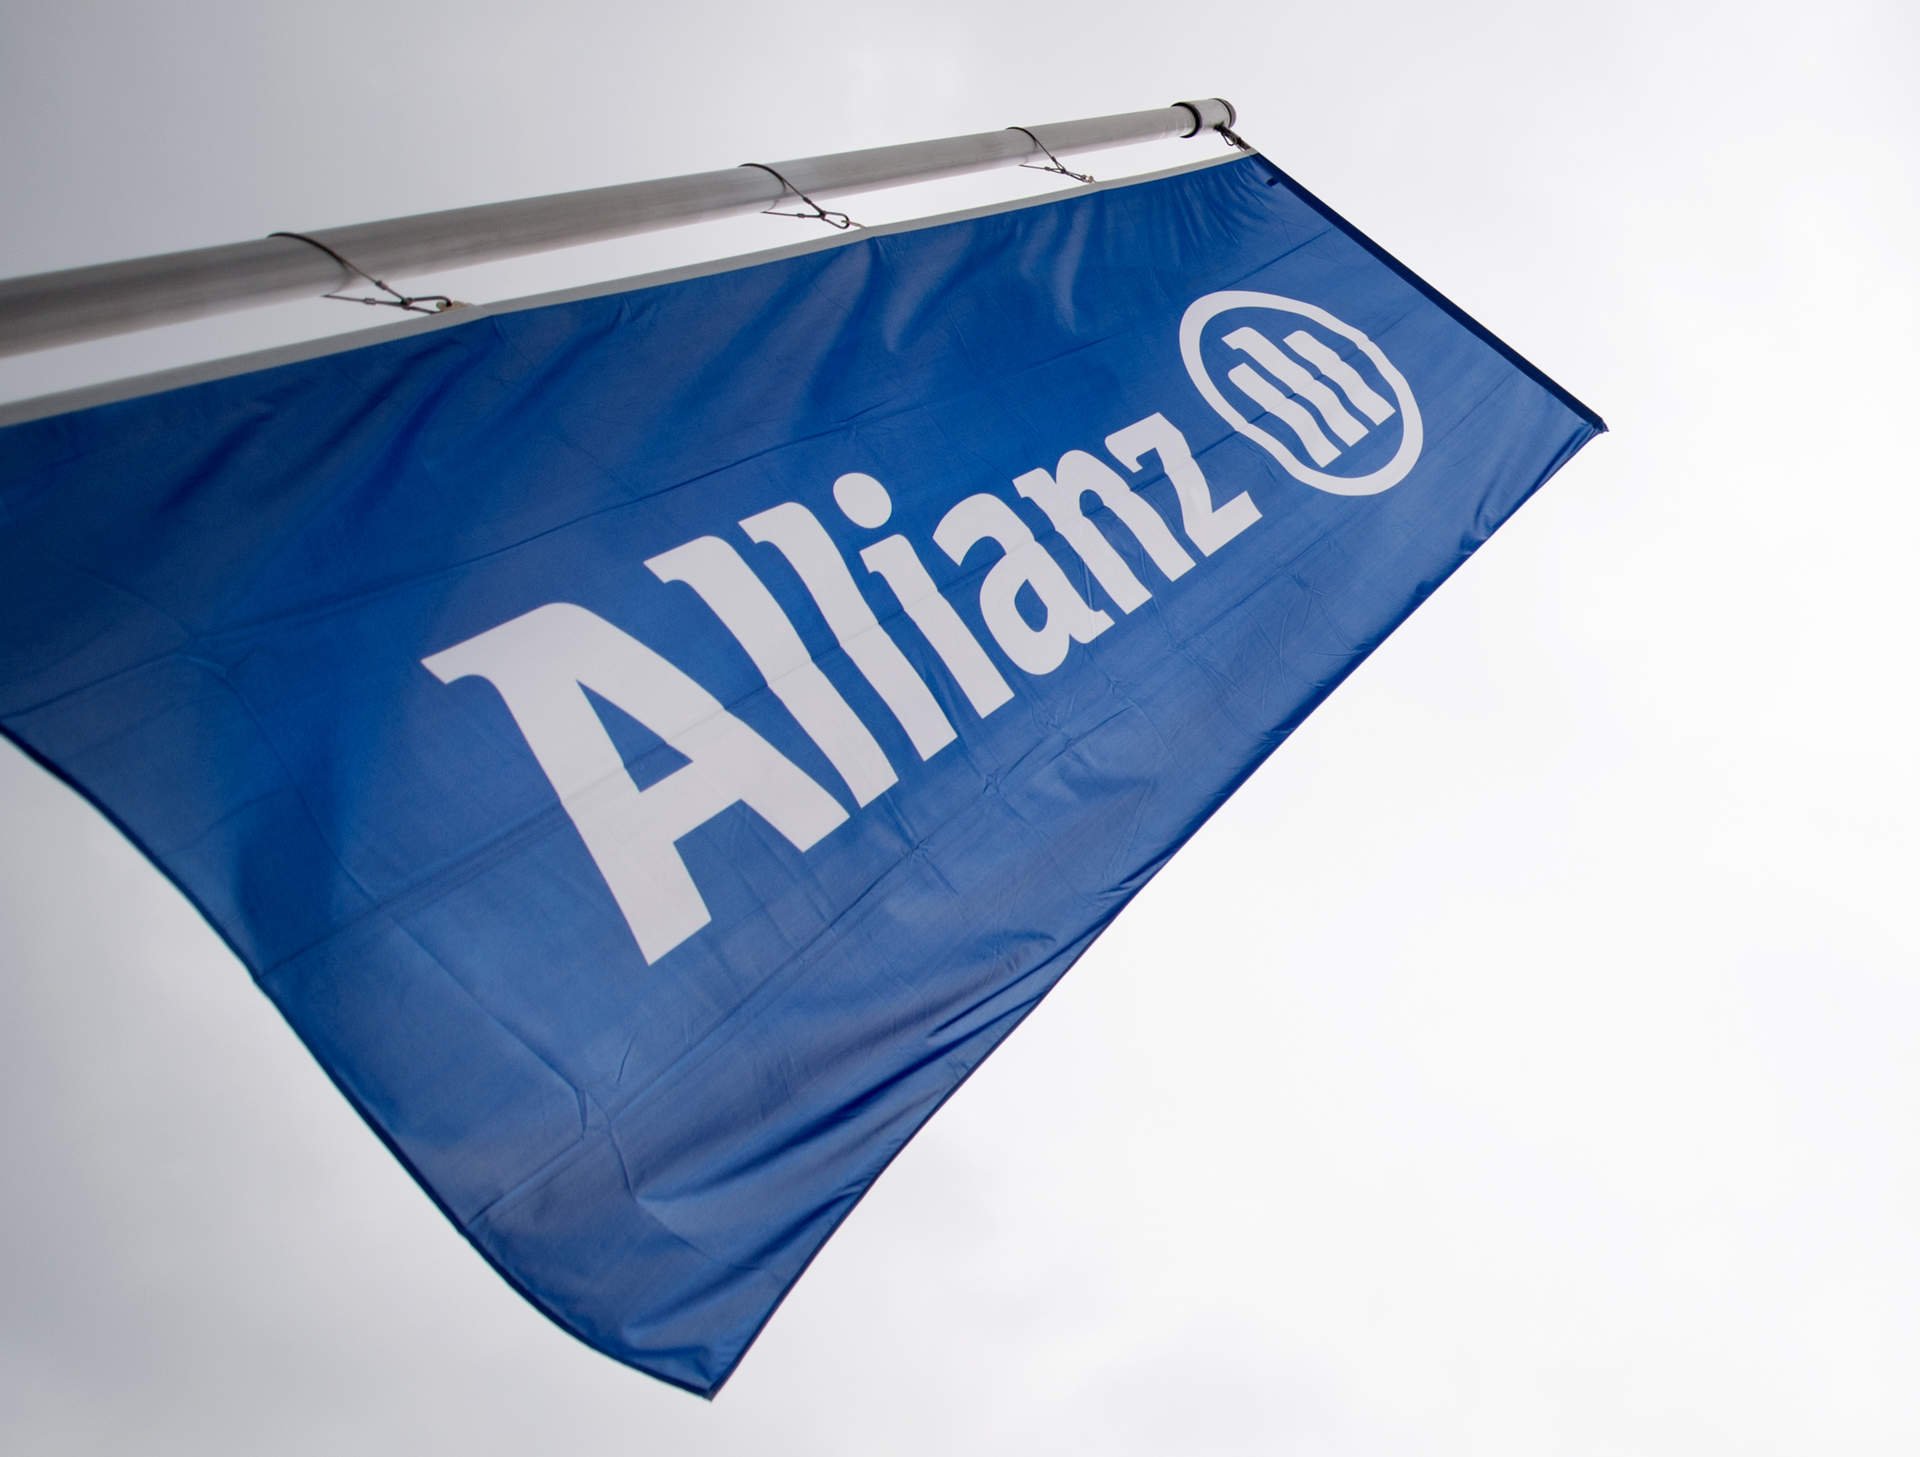 Allianz GI cierra su fondo de crédito privado para Asia-Pacífico tras captar 562 millones de euros